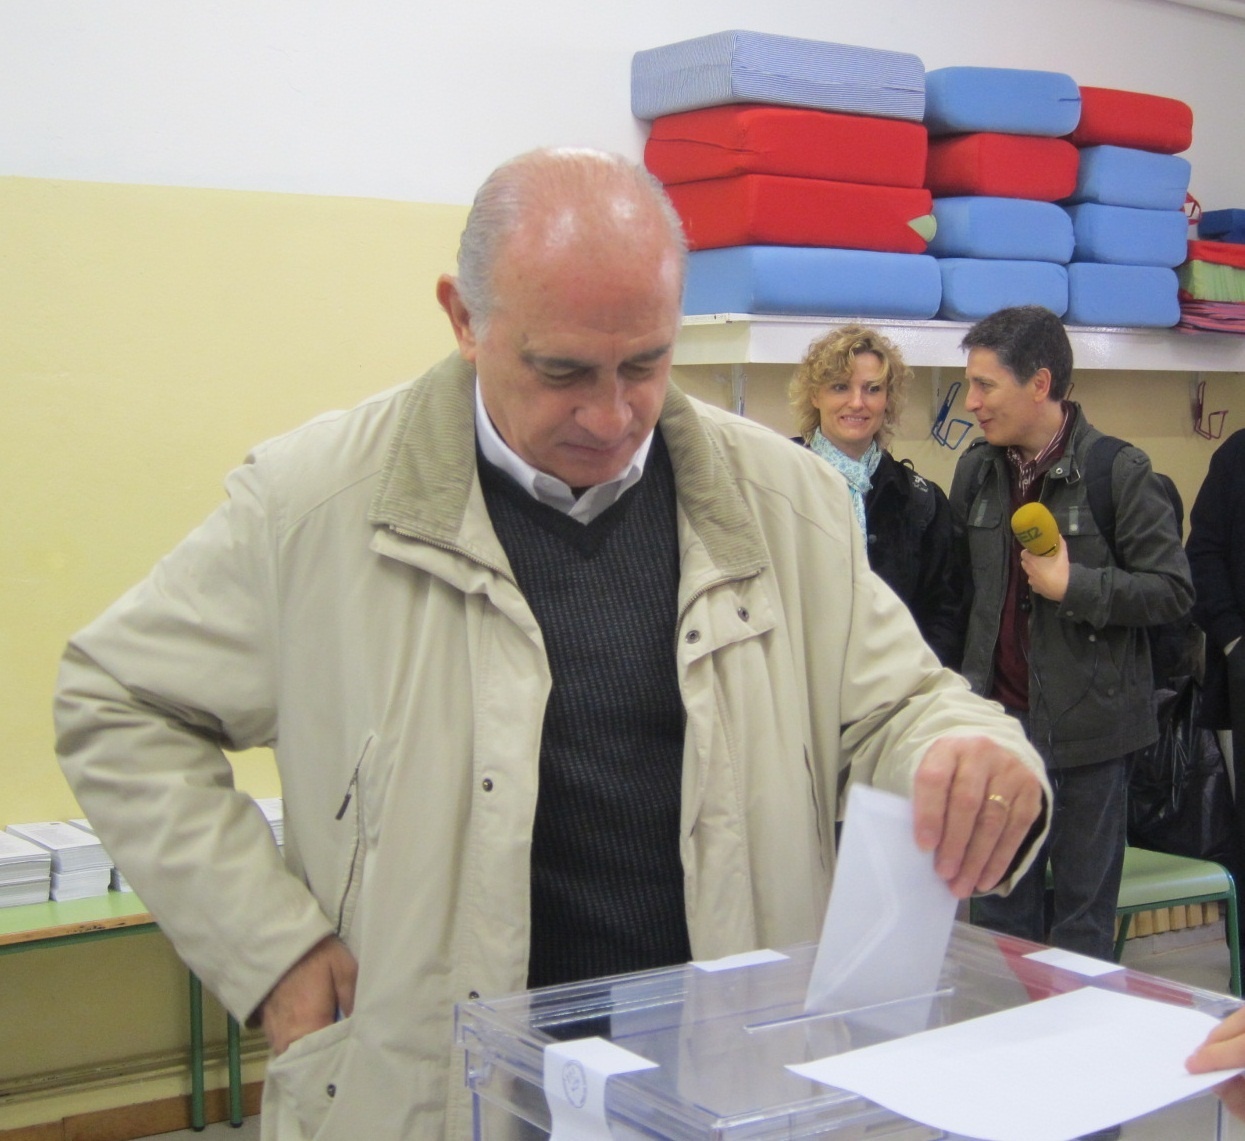 El ministro del Interior confía en que voten muchos catalanes y lo hagan «con normalidad»